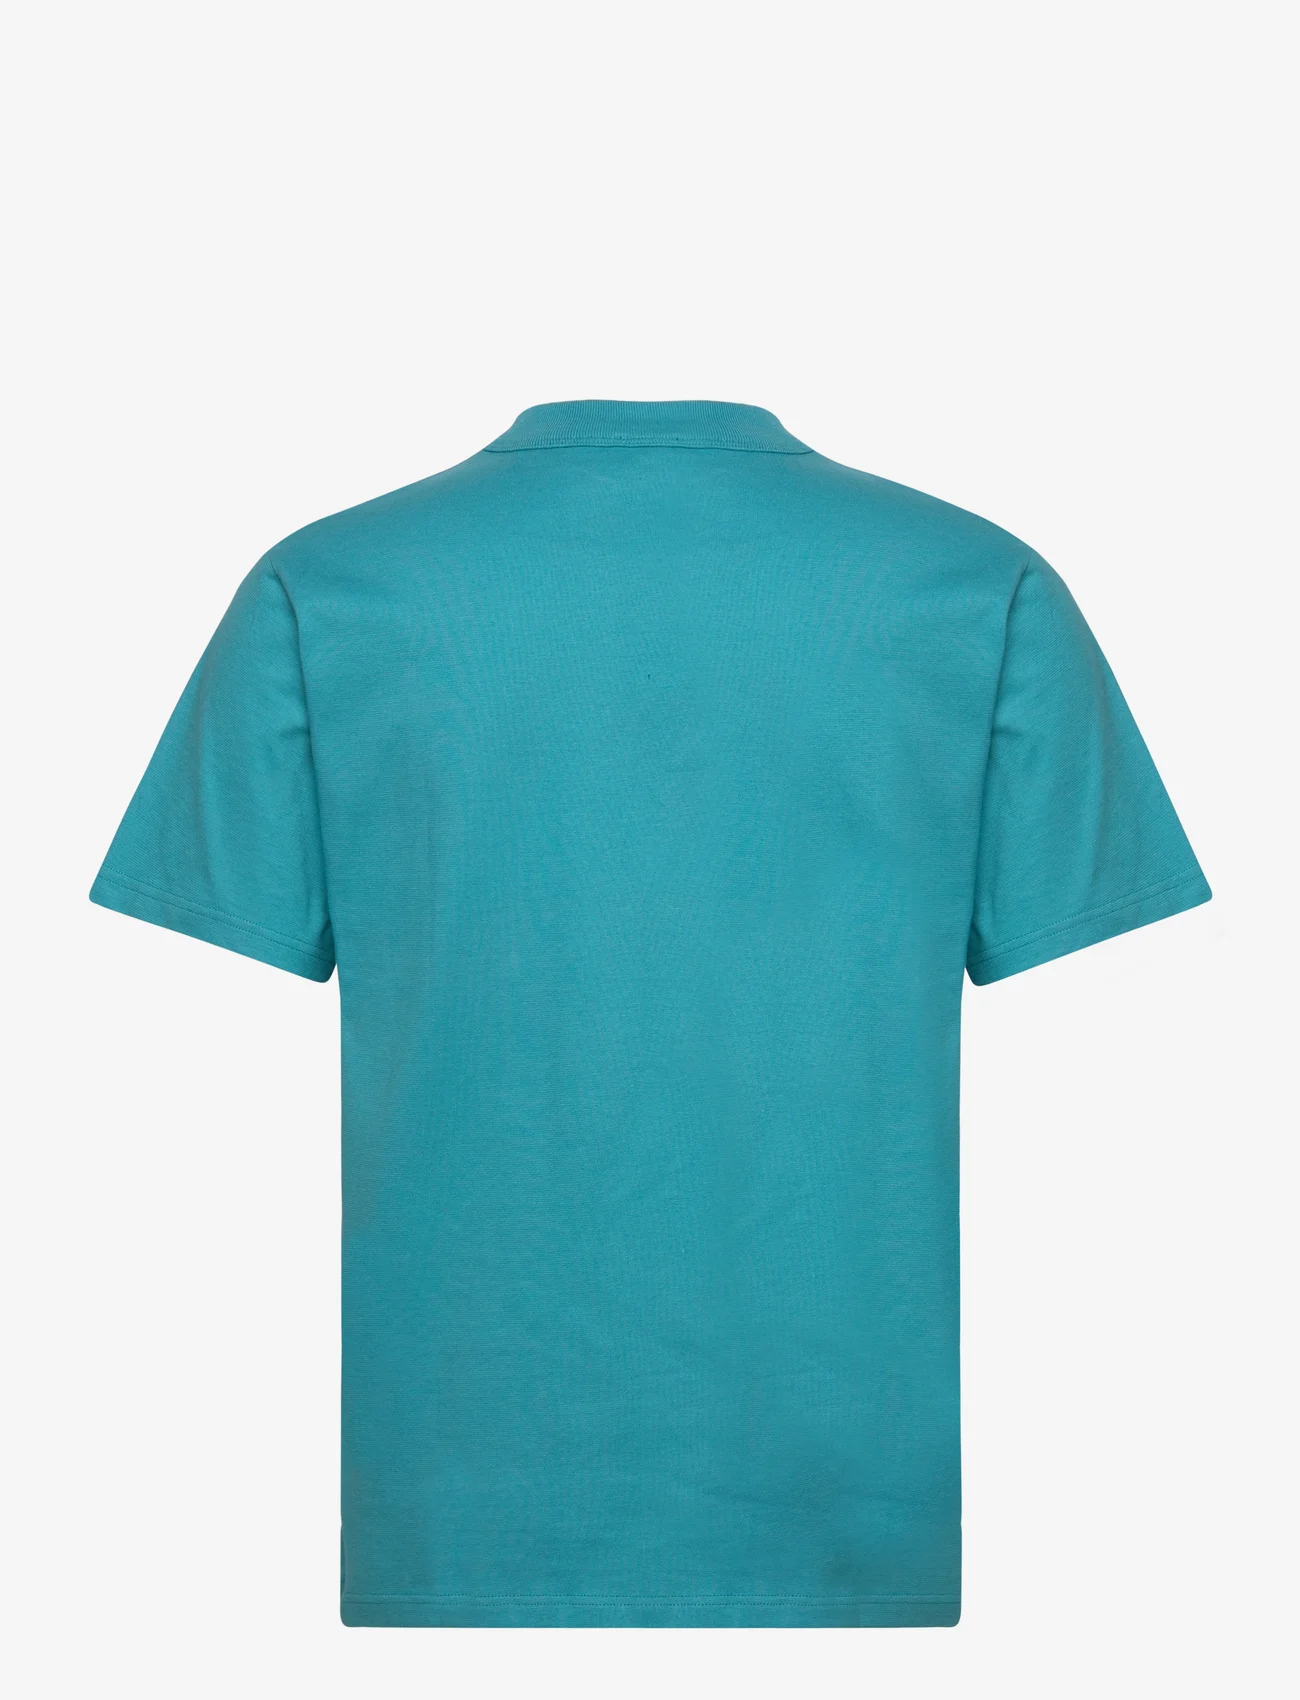 Armor Lux - Basic Pocket T-shirt Héritage - laveste priser - pagoda - 1